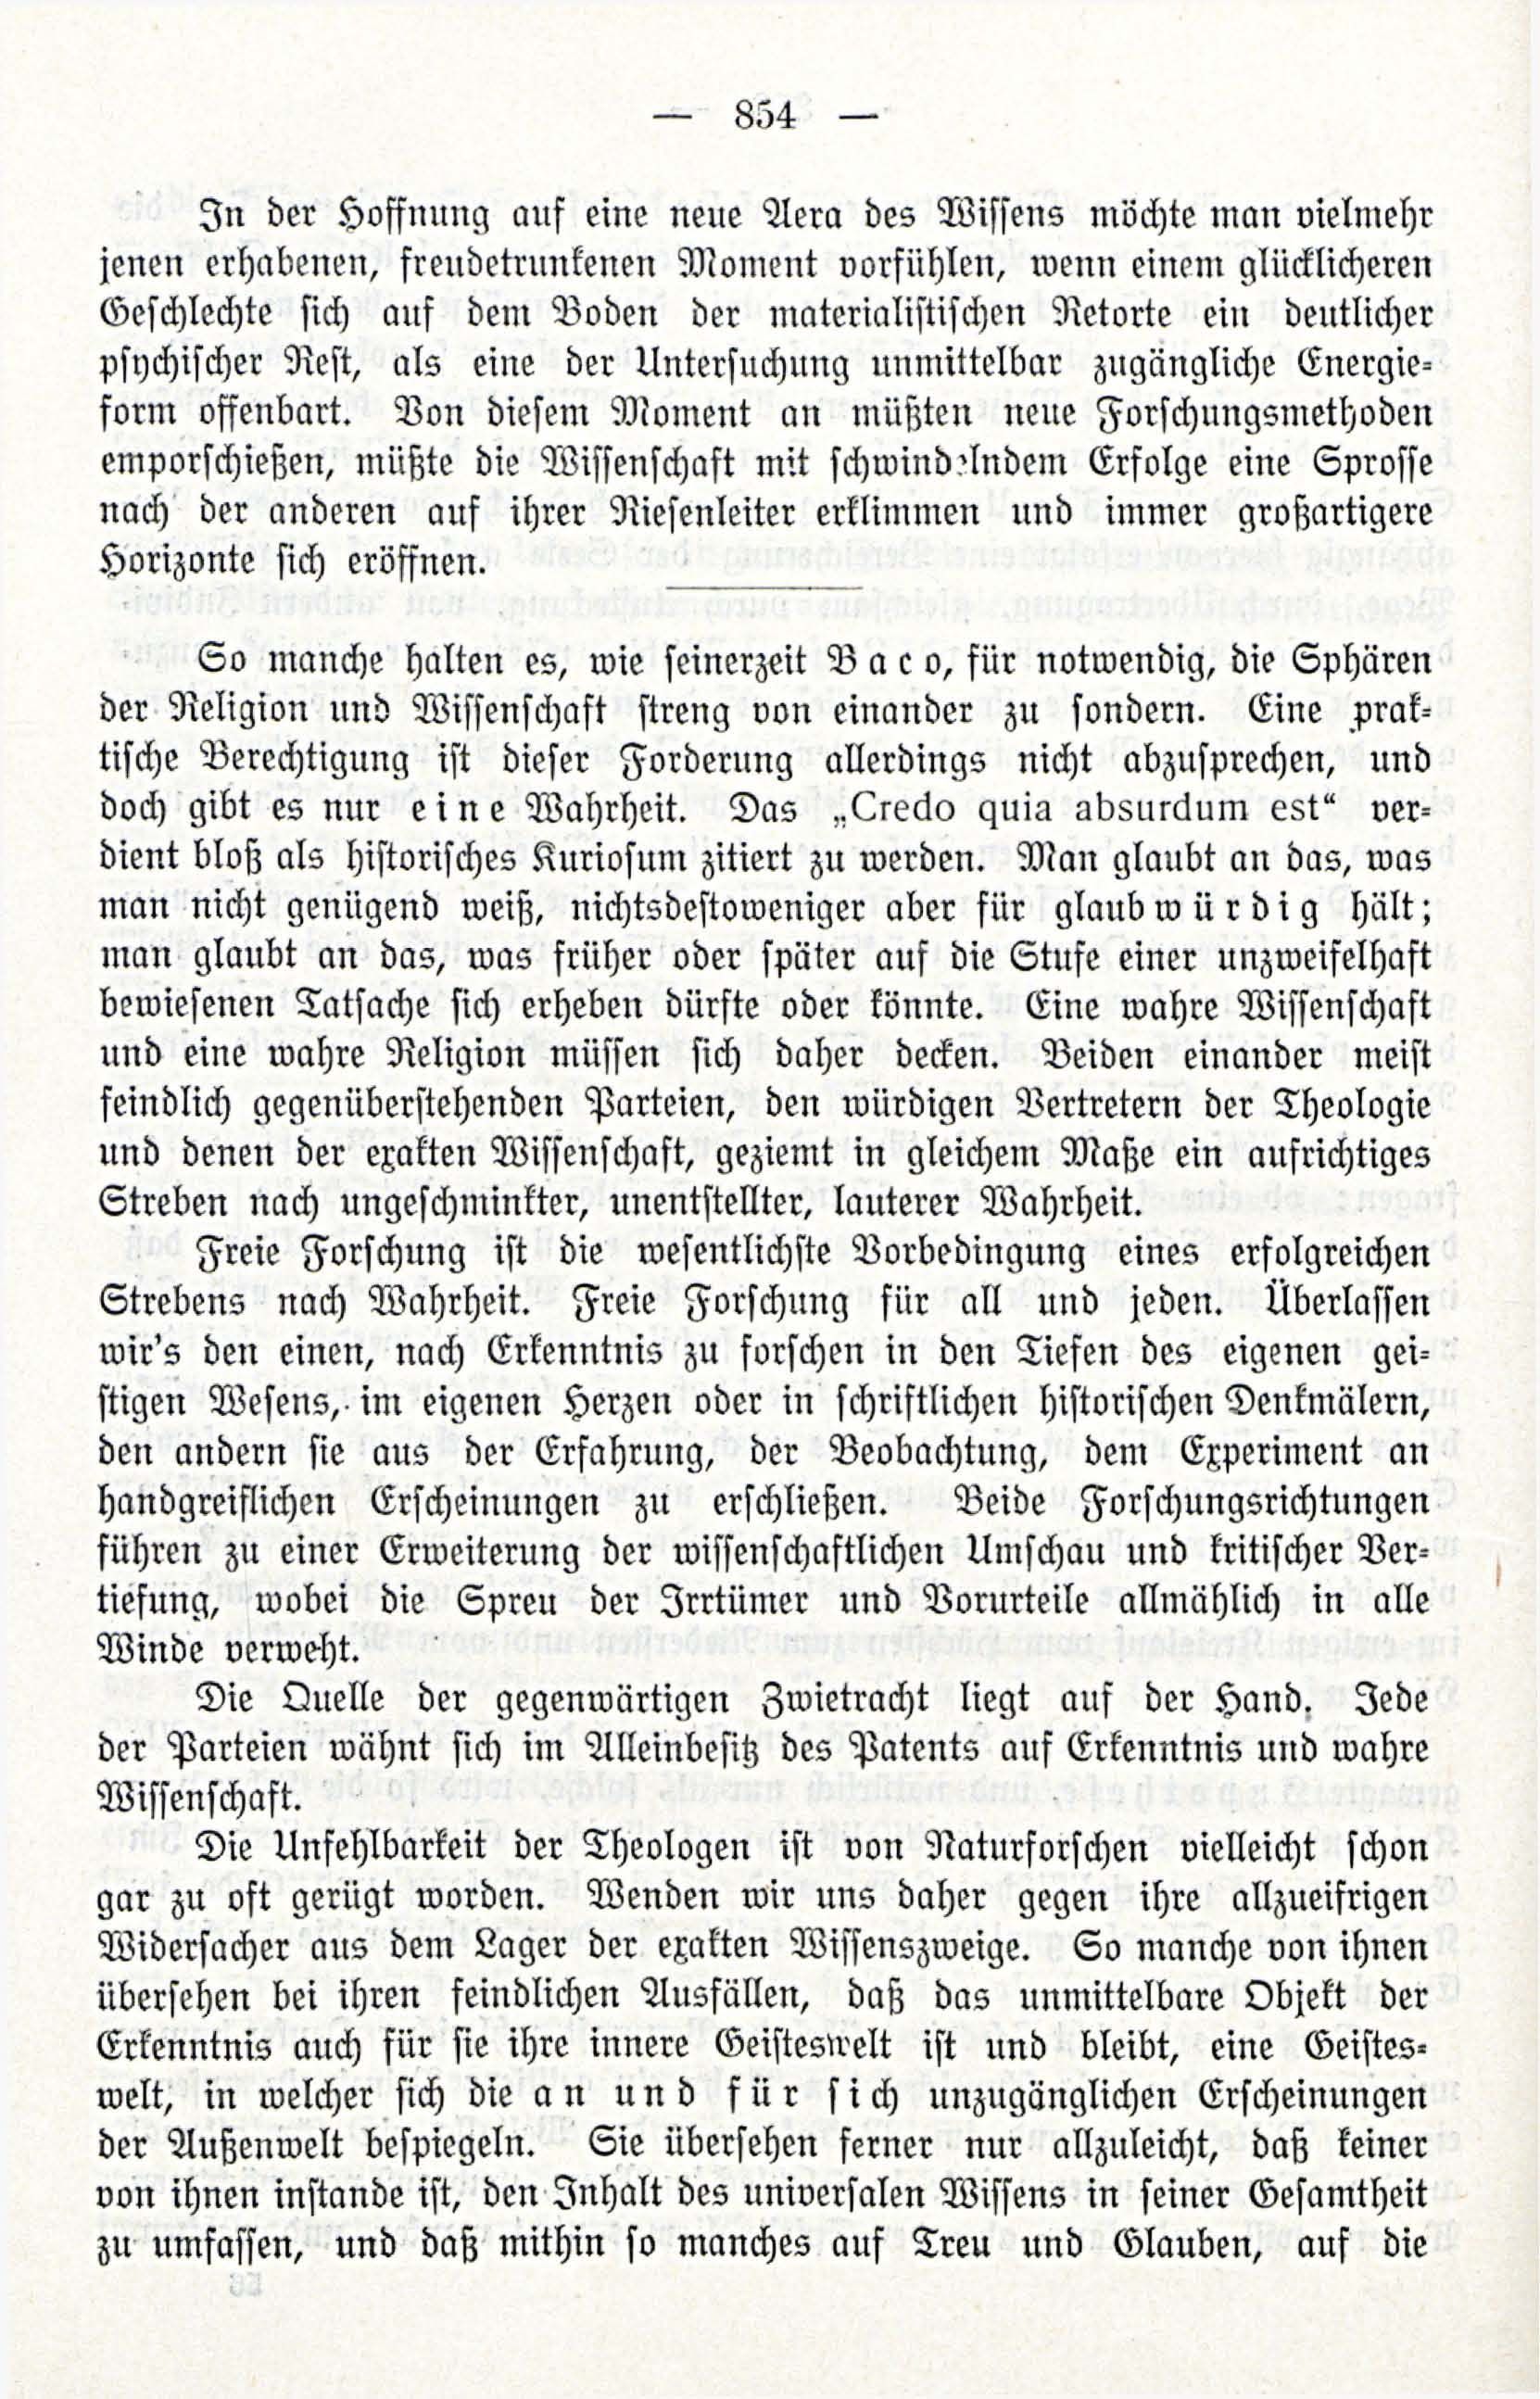 Deutsche Monatsschrift für Russland [3/12] (1914) | 70. (854) Main body of text